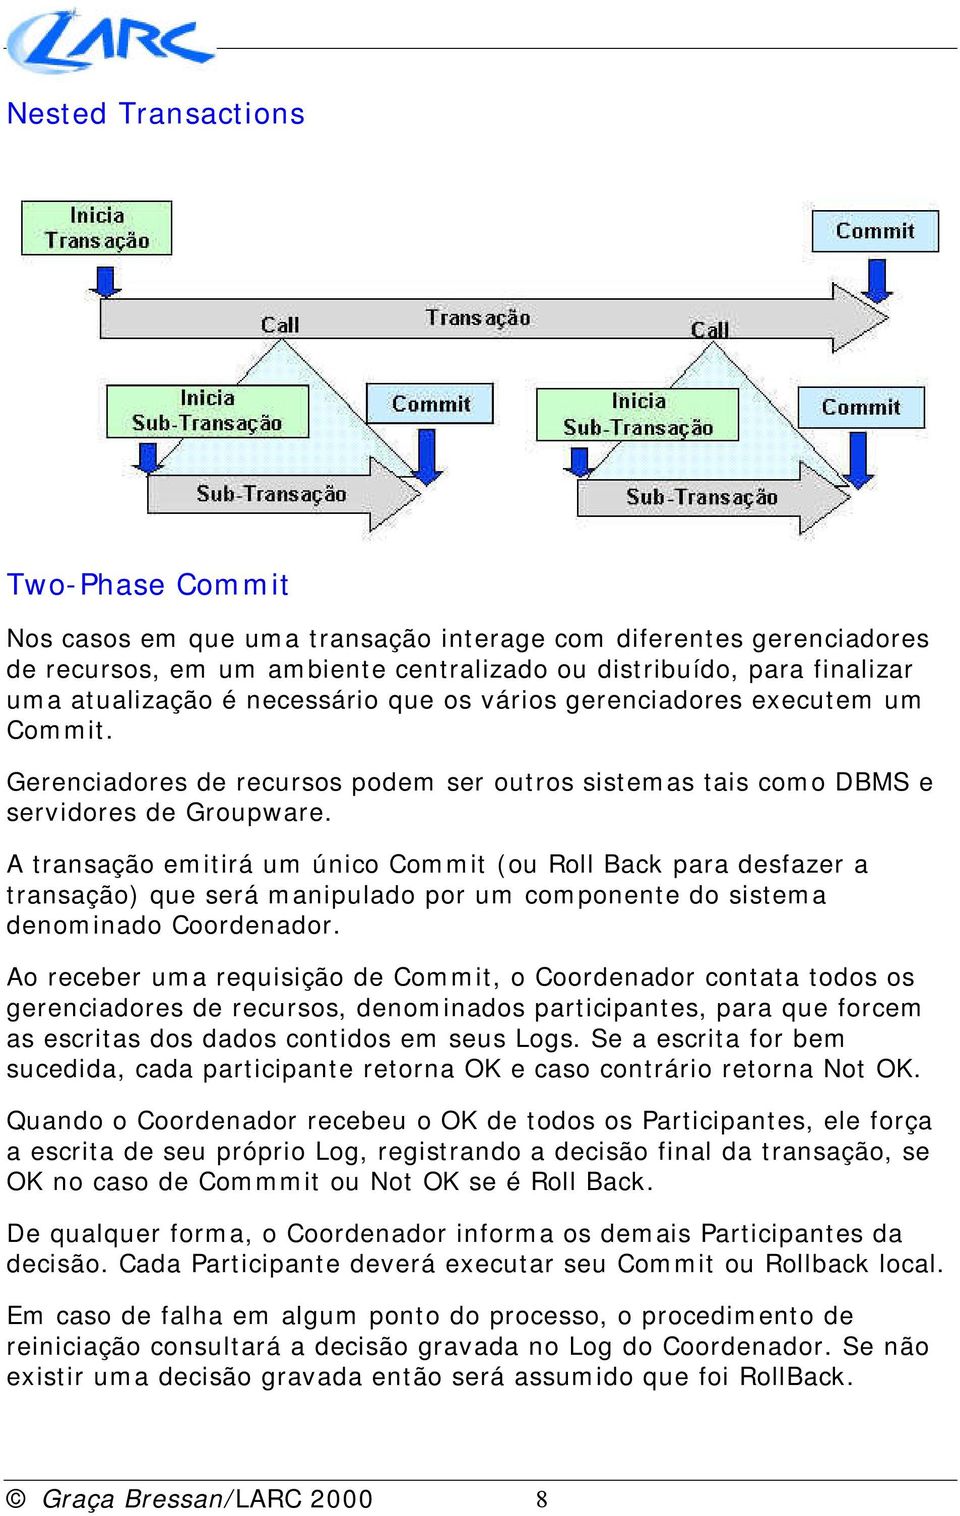 A transação emitirá um único Commit (ou Roll Back para desfazer a transação) que será manipulado por um componente do sistema denominado Coordenador.